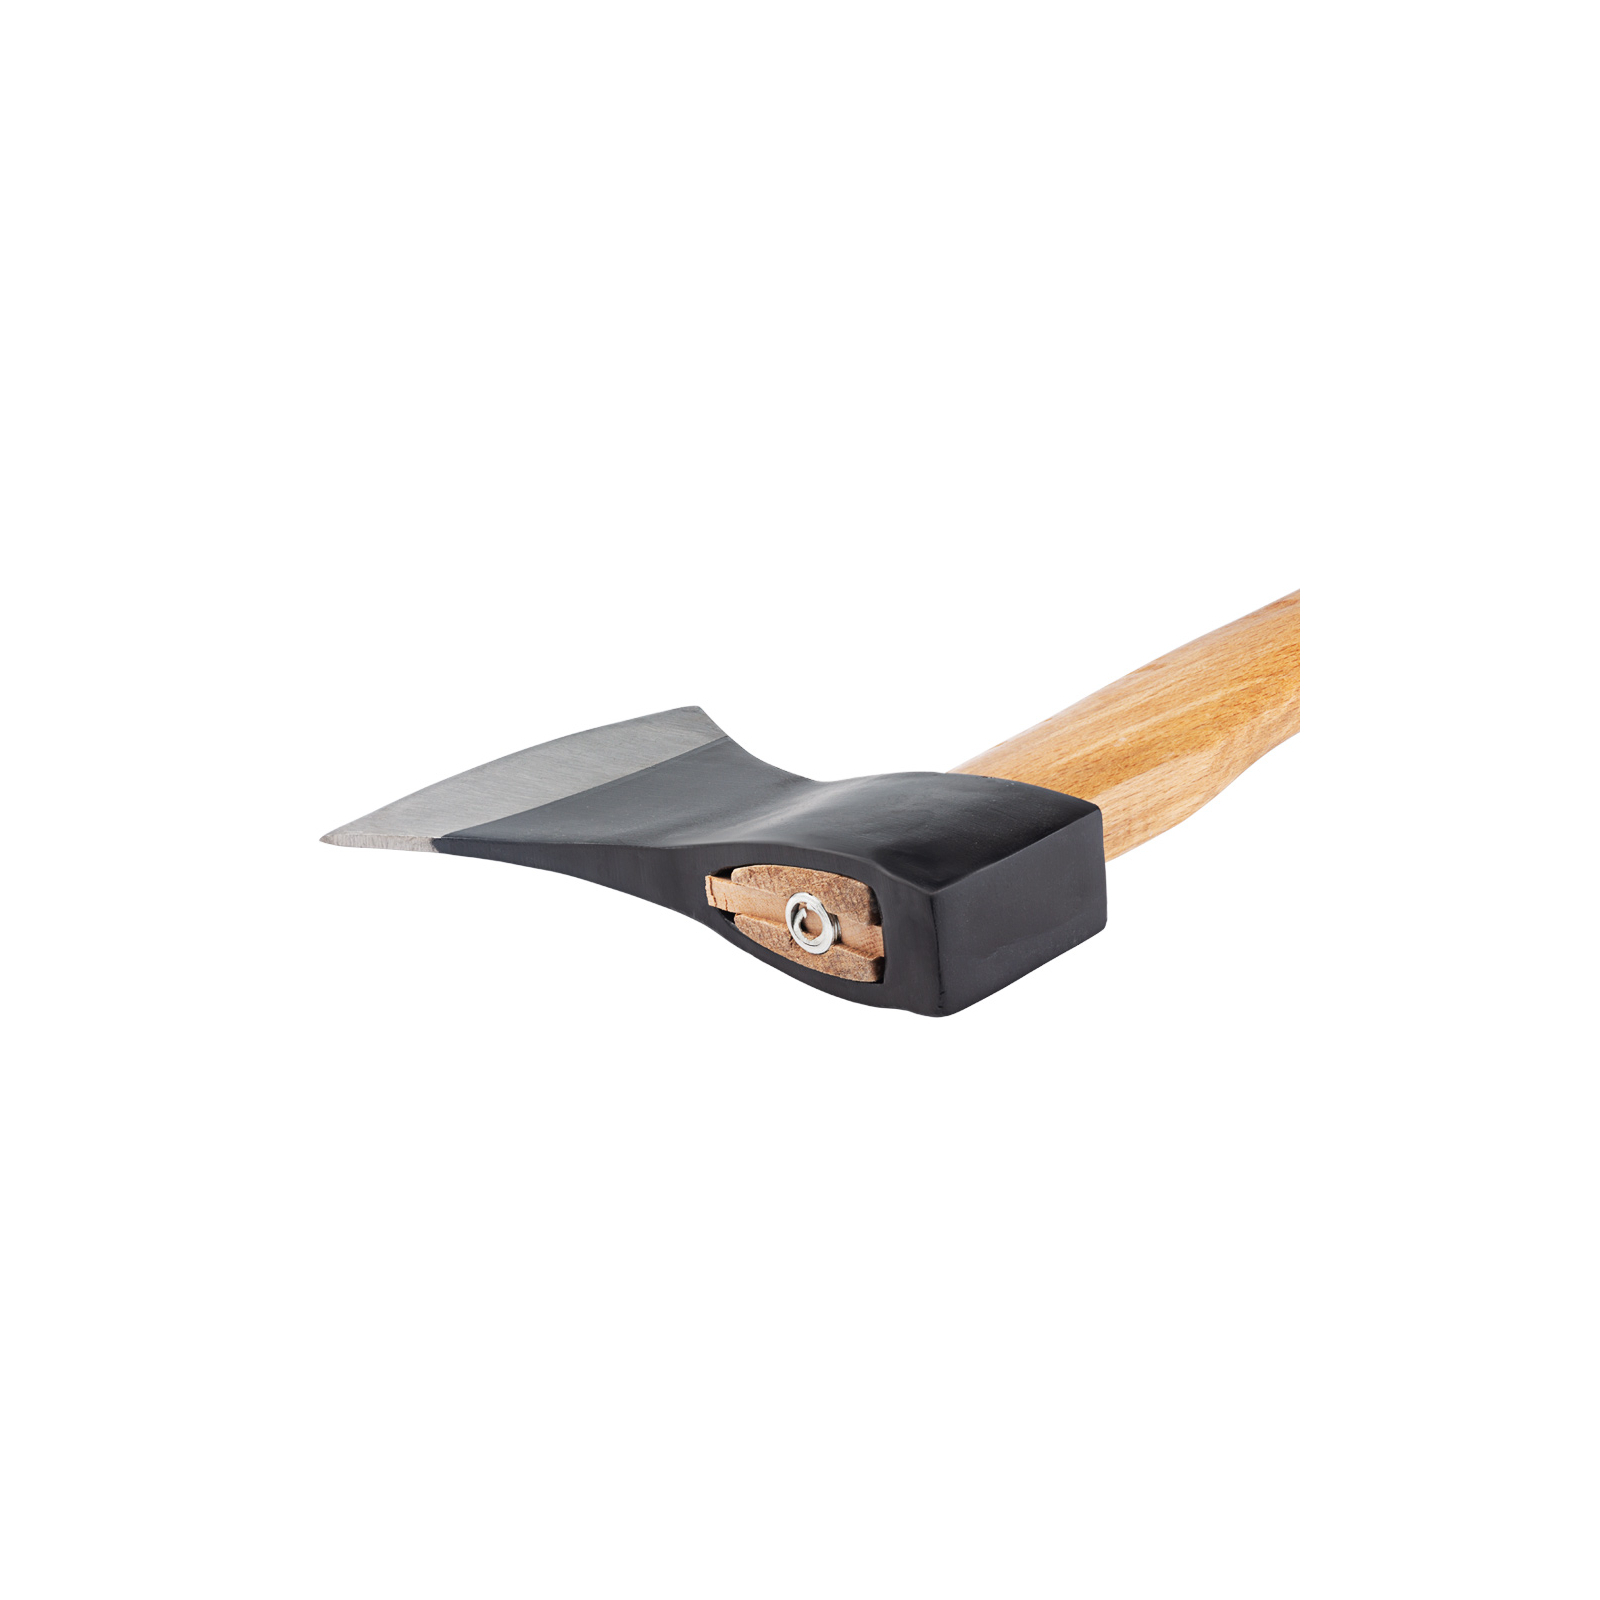 Сокира Sigma 1250г дерев'яна ручка 700мм (береза) (4321351) зображення 4